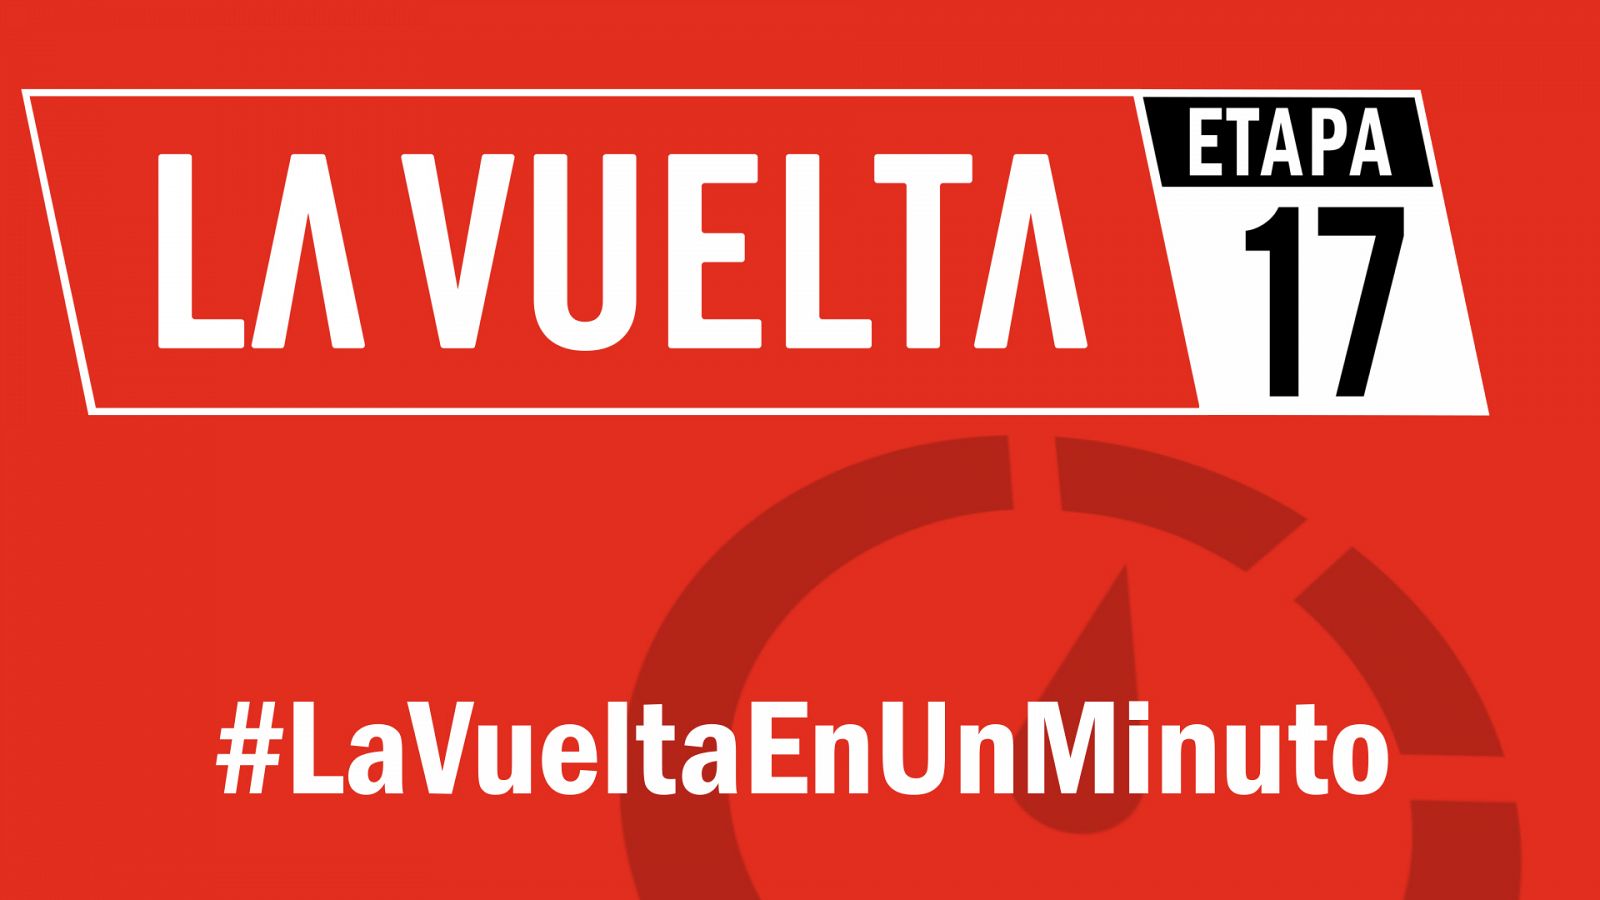 Vuelta a España 2019 | #LaVueltaEnUnMinuto - Etapa 17